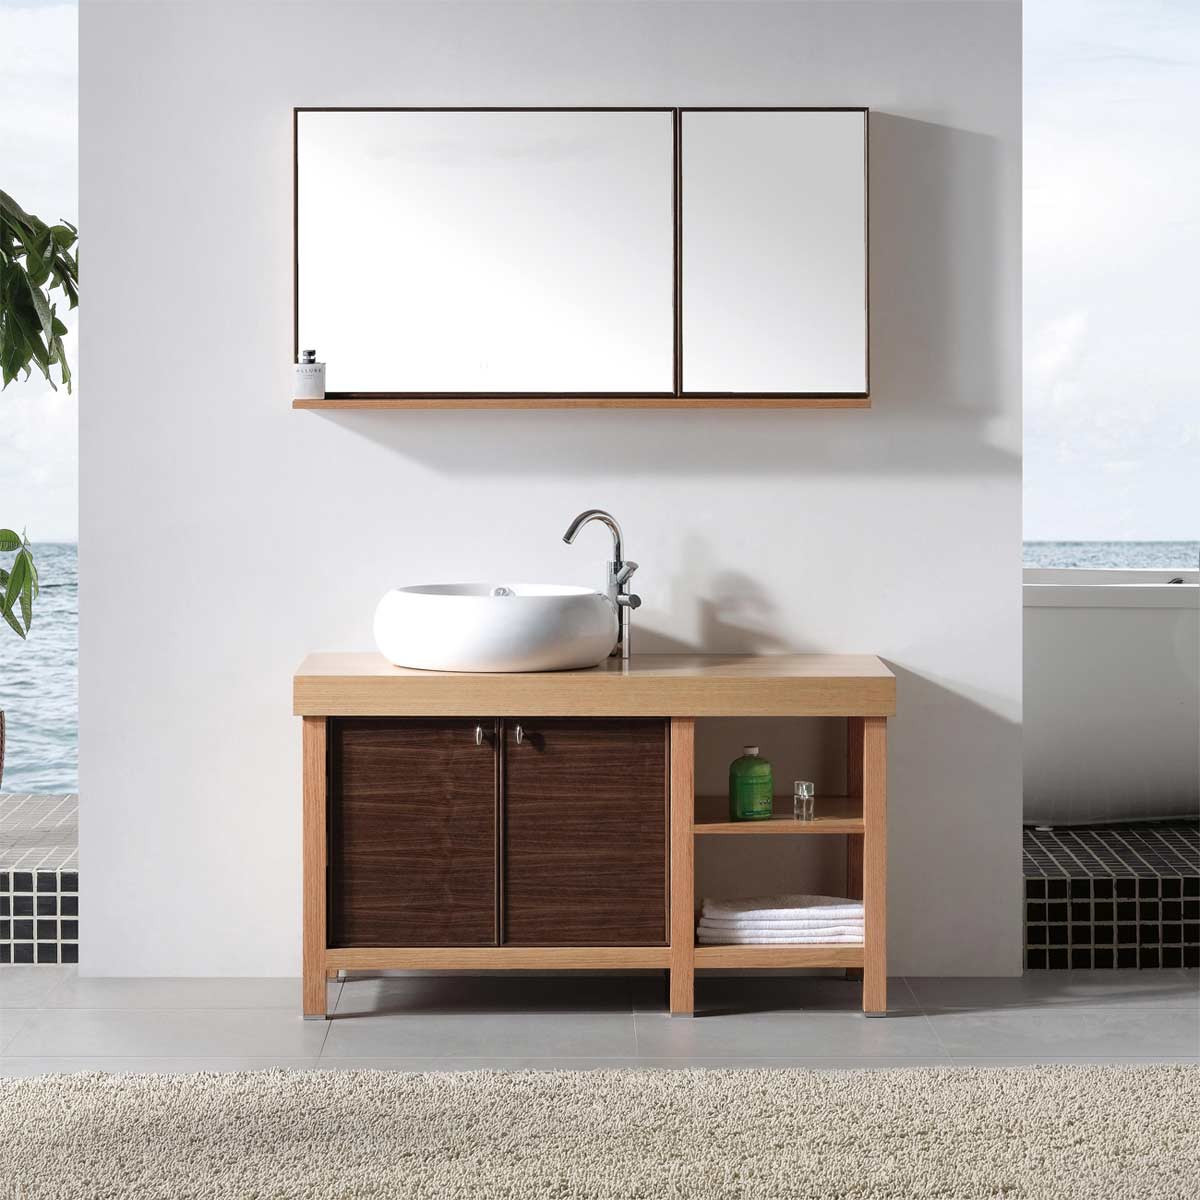 All Wood Bathroom Vanities
 Mirrored sink vanity bathroom l shaped design bathroom